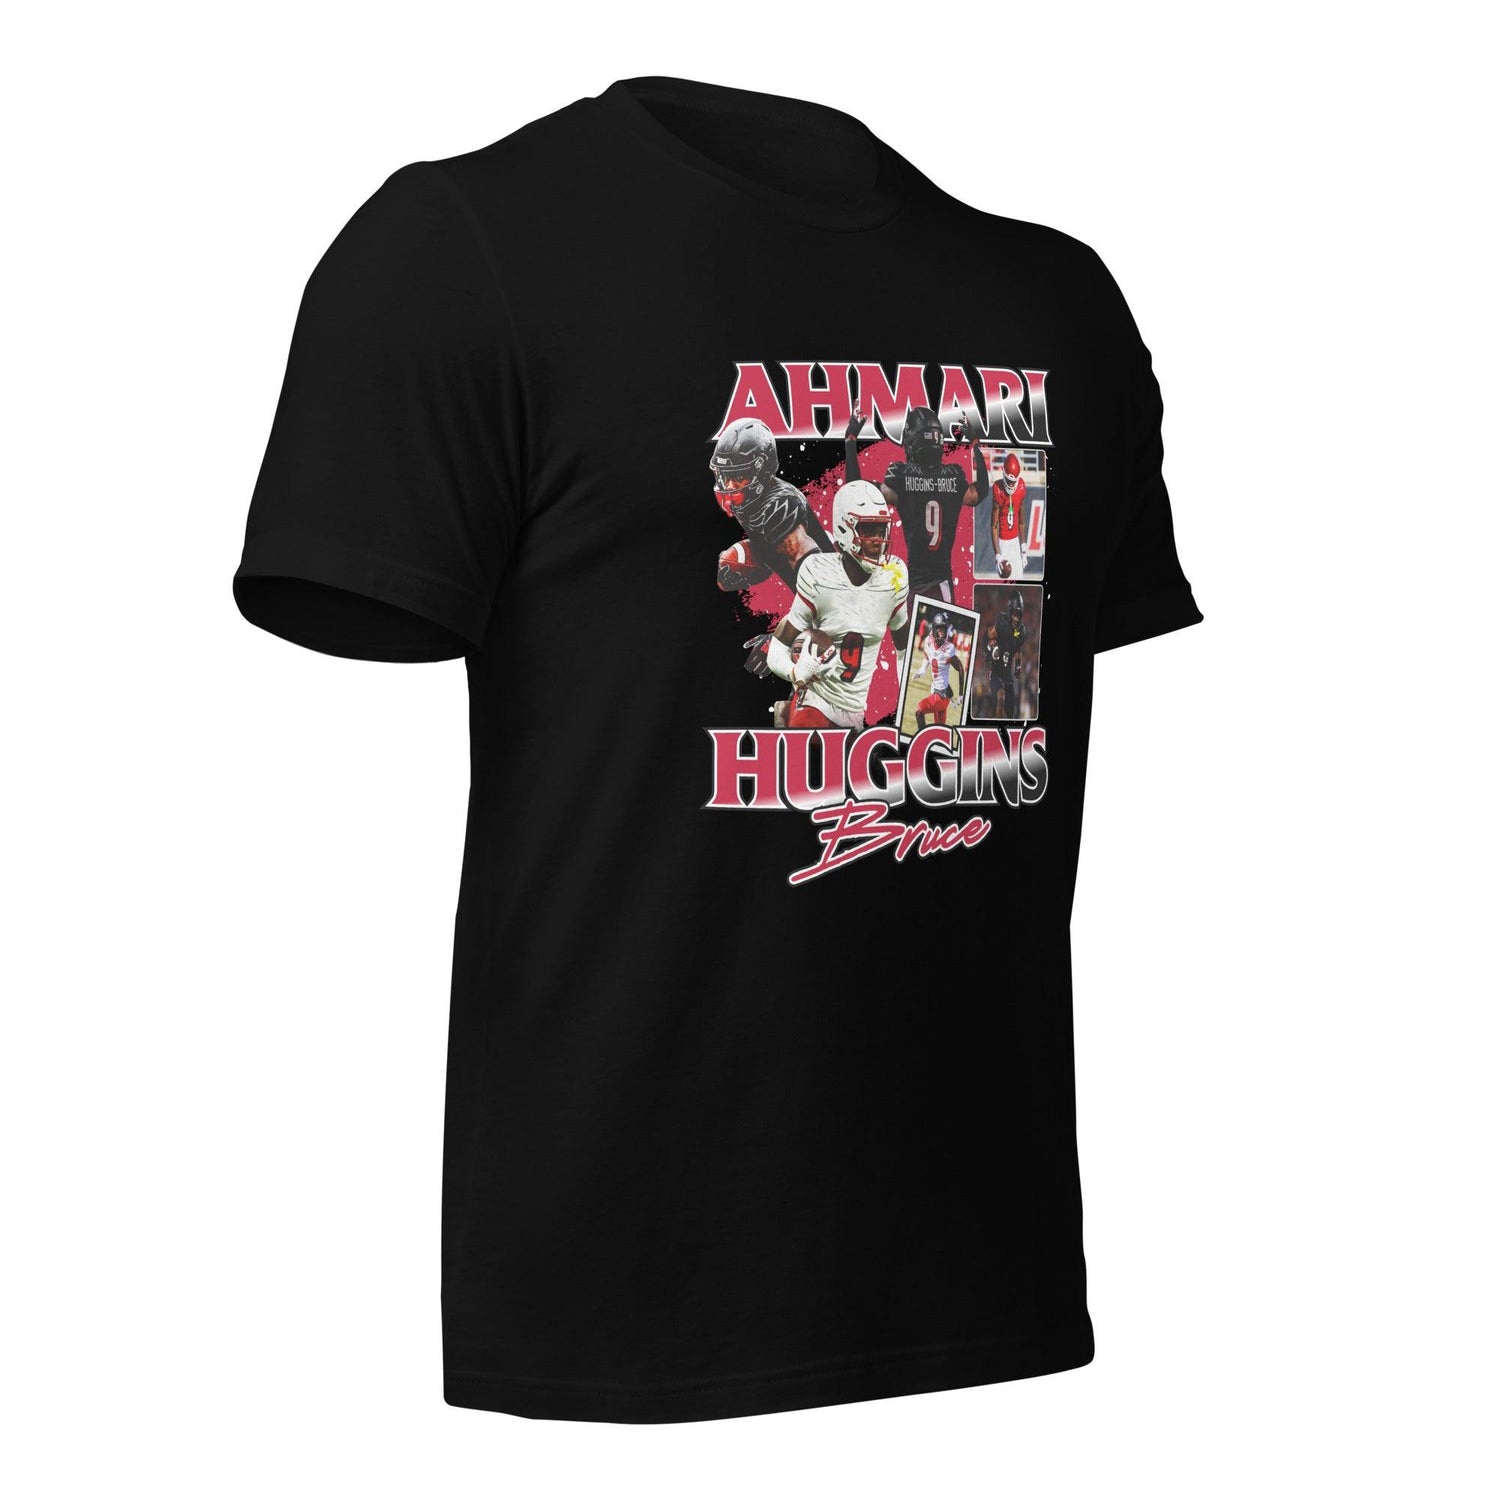 Ahmari Huggins "Vintage" t-shirt - Fan Arch